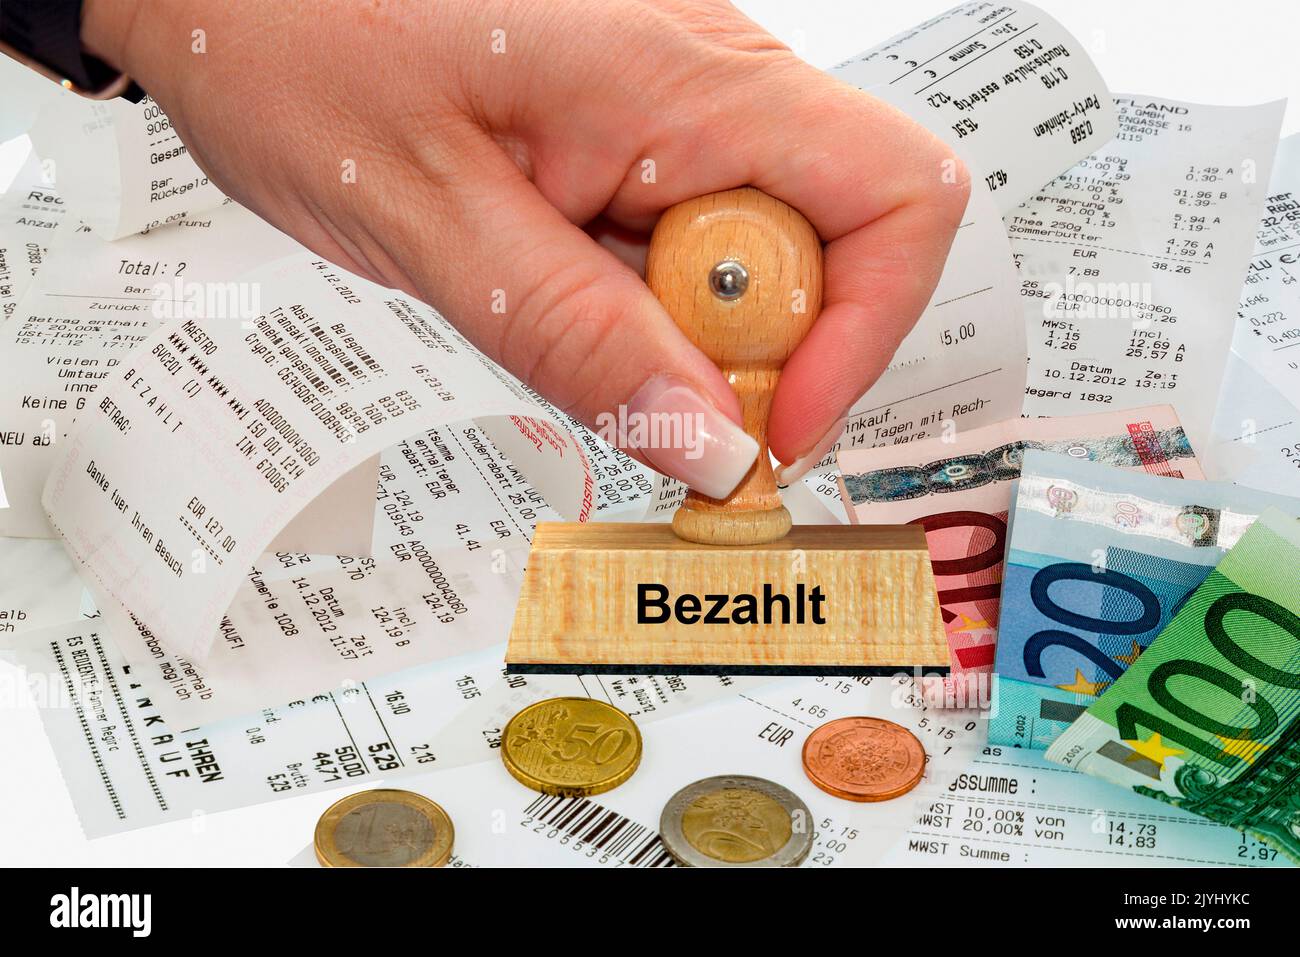 Mano della donna con la scritta del bollo Bezahlt, pagato, Germania Foto Stock